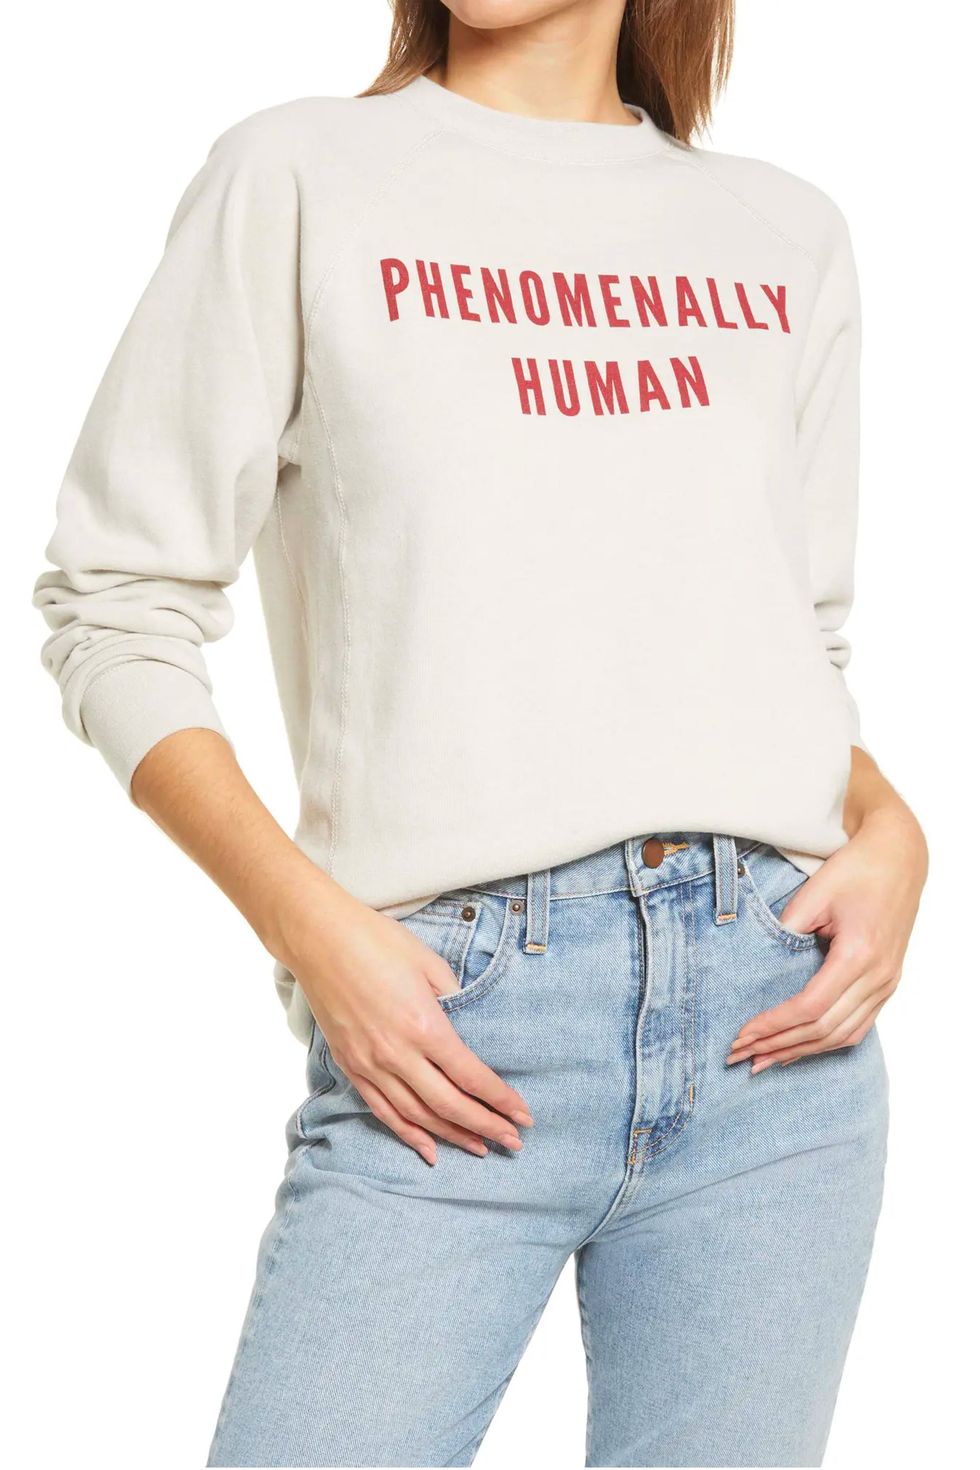 Phenomenally Human Cotton Blend Sweatshirt